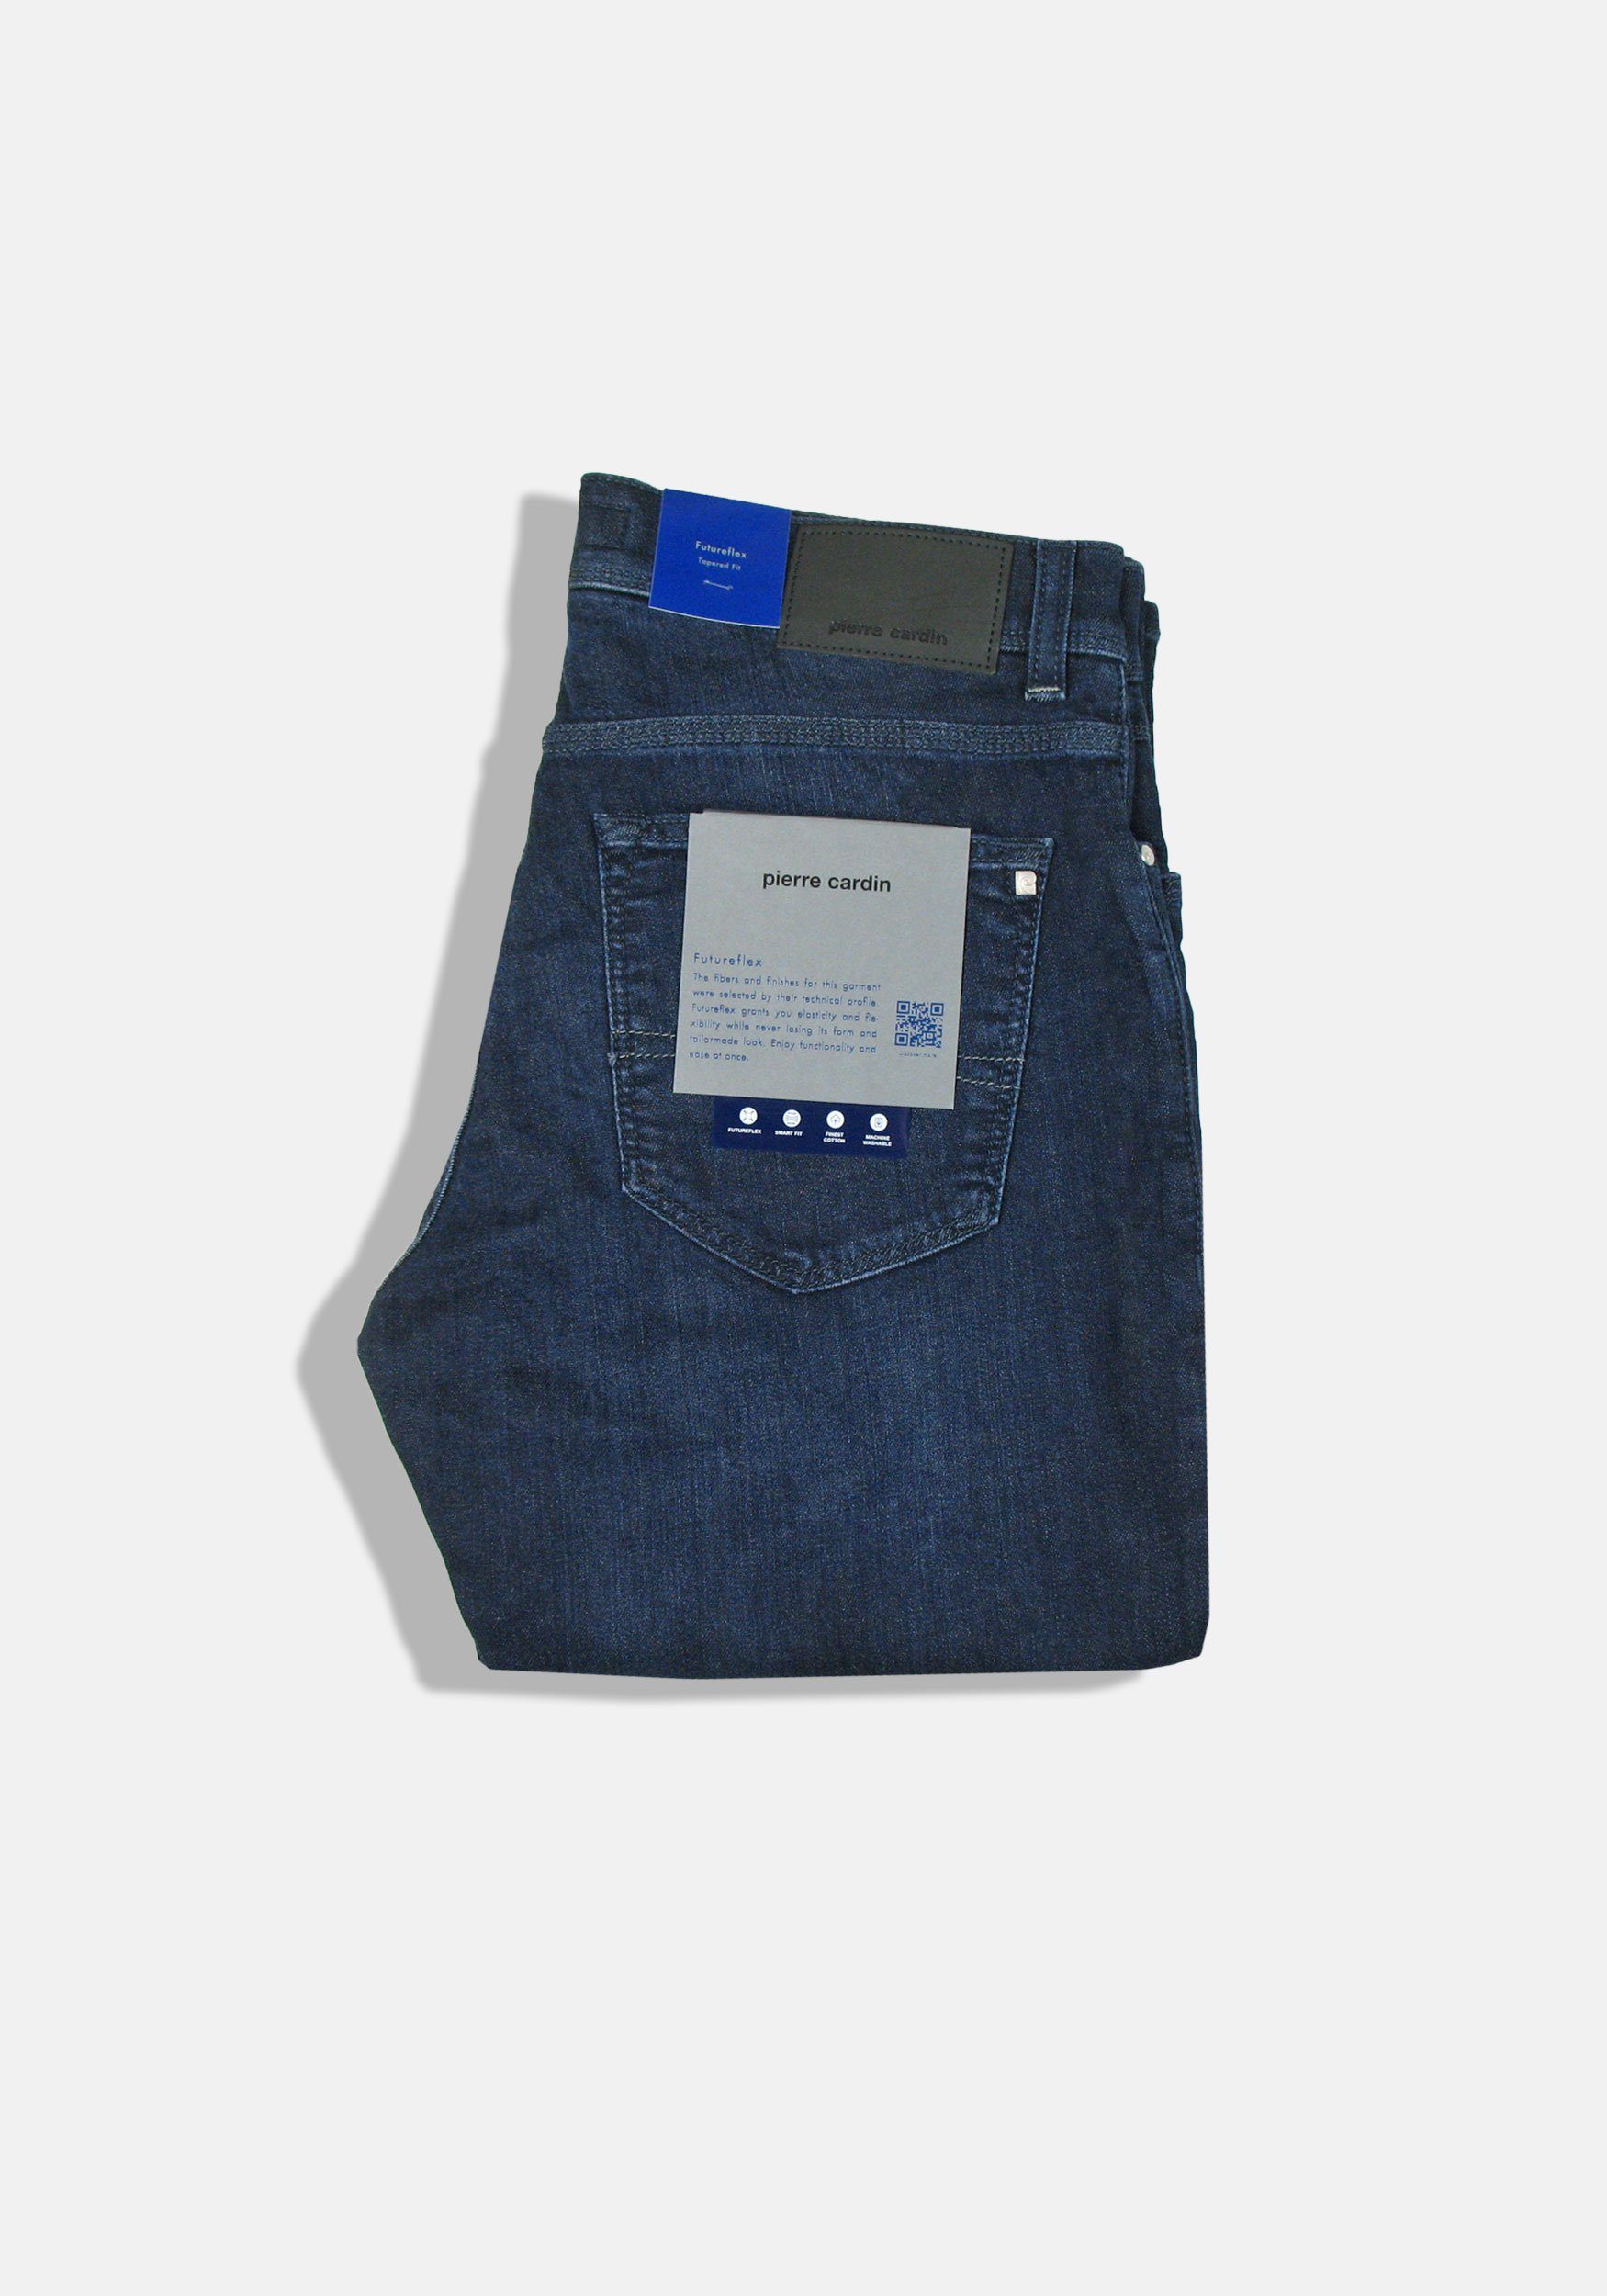 Pierre Cardin 5-Pocket-Jeans Lyon Used Tapered Blue und Whisker Denim, Dark elastisch bequem Futureflex